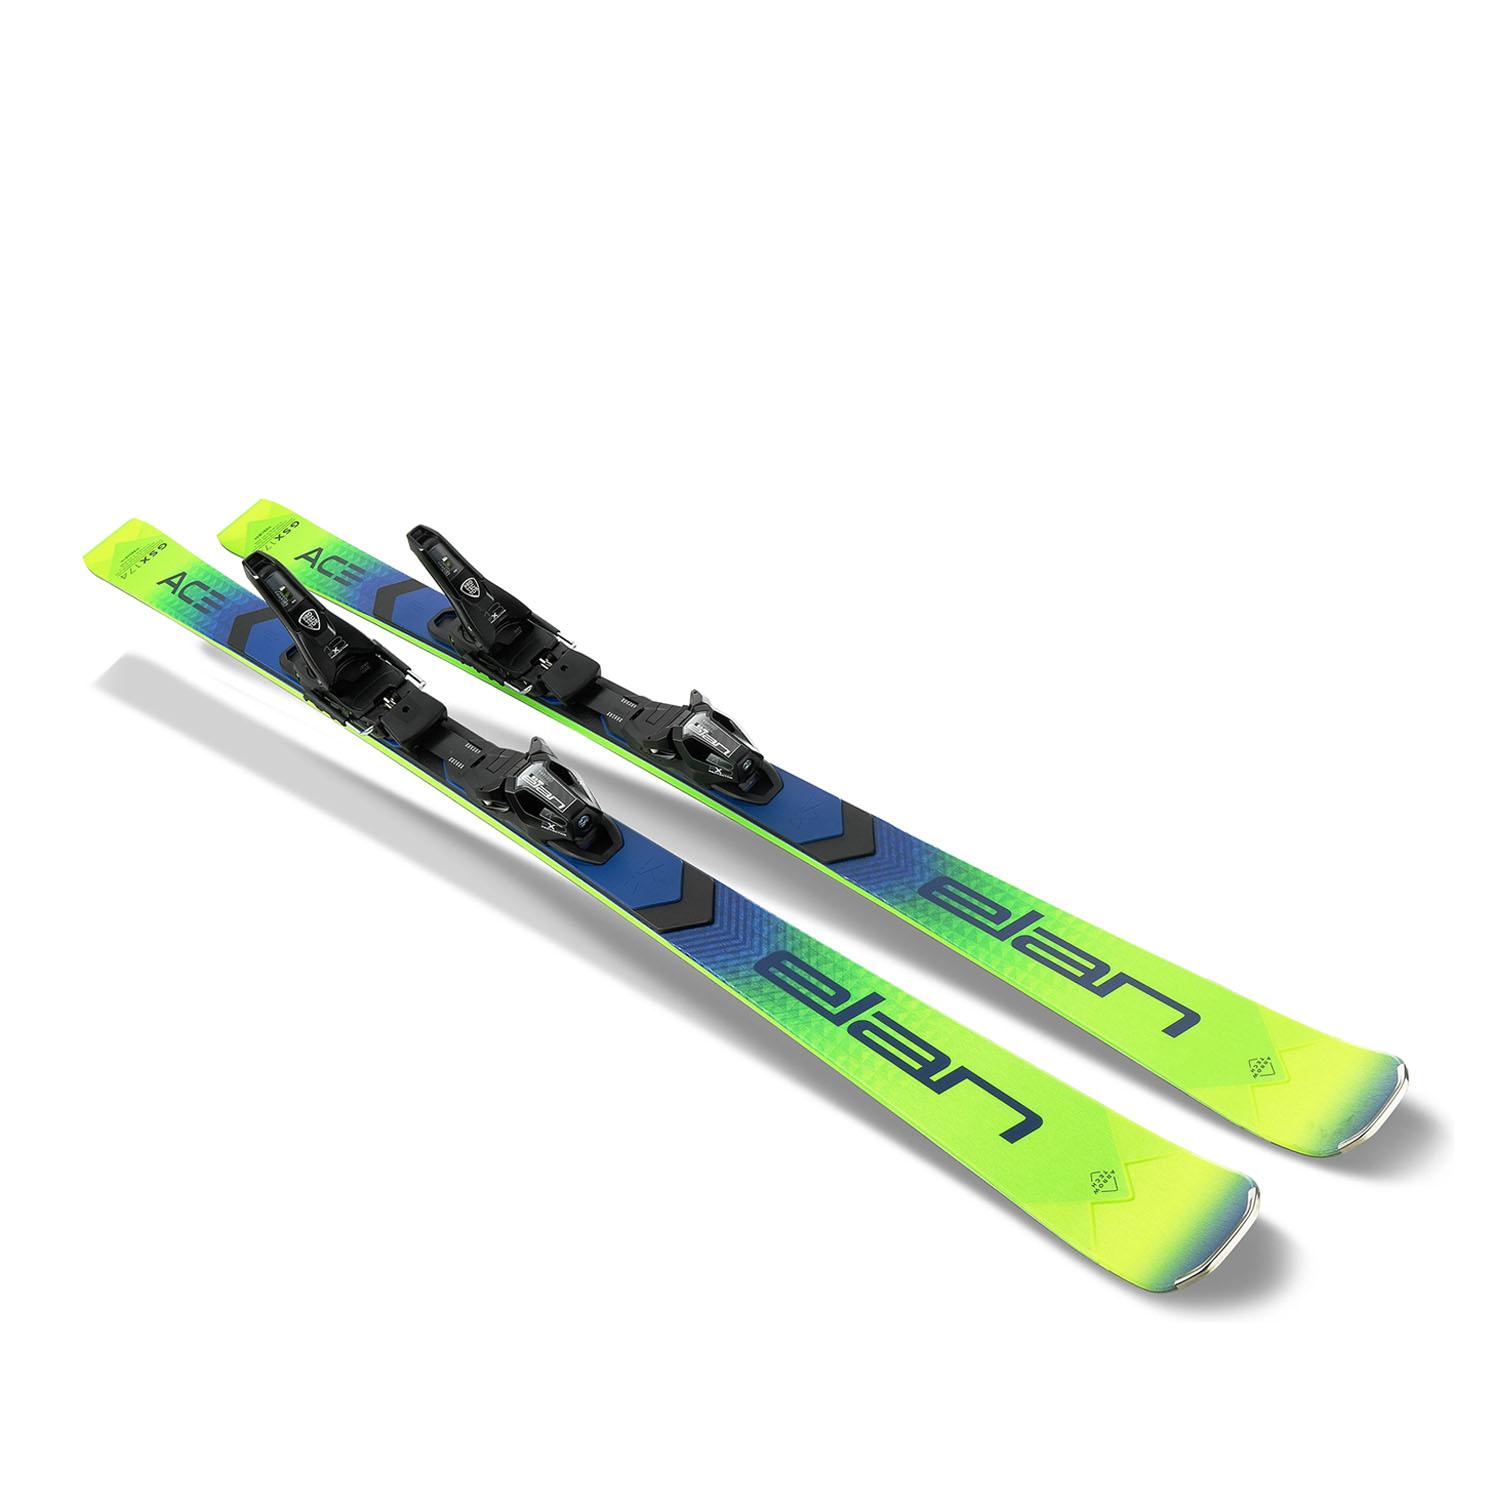 Горные лыжи с креплениями ELAN Ace Gsx Fx + Protector 13.0 Gw